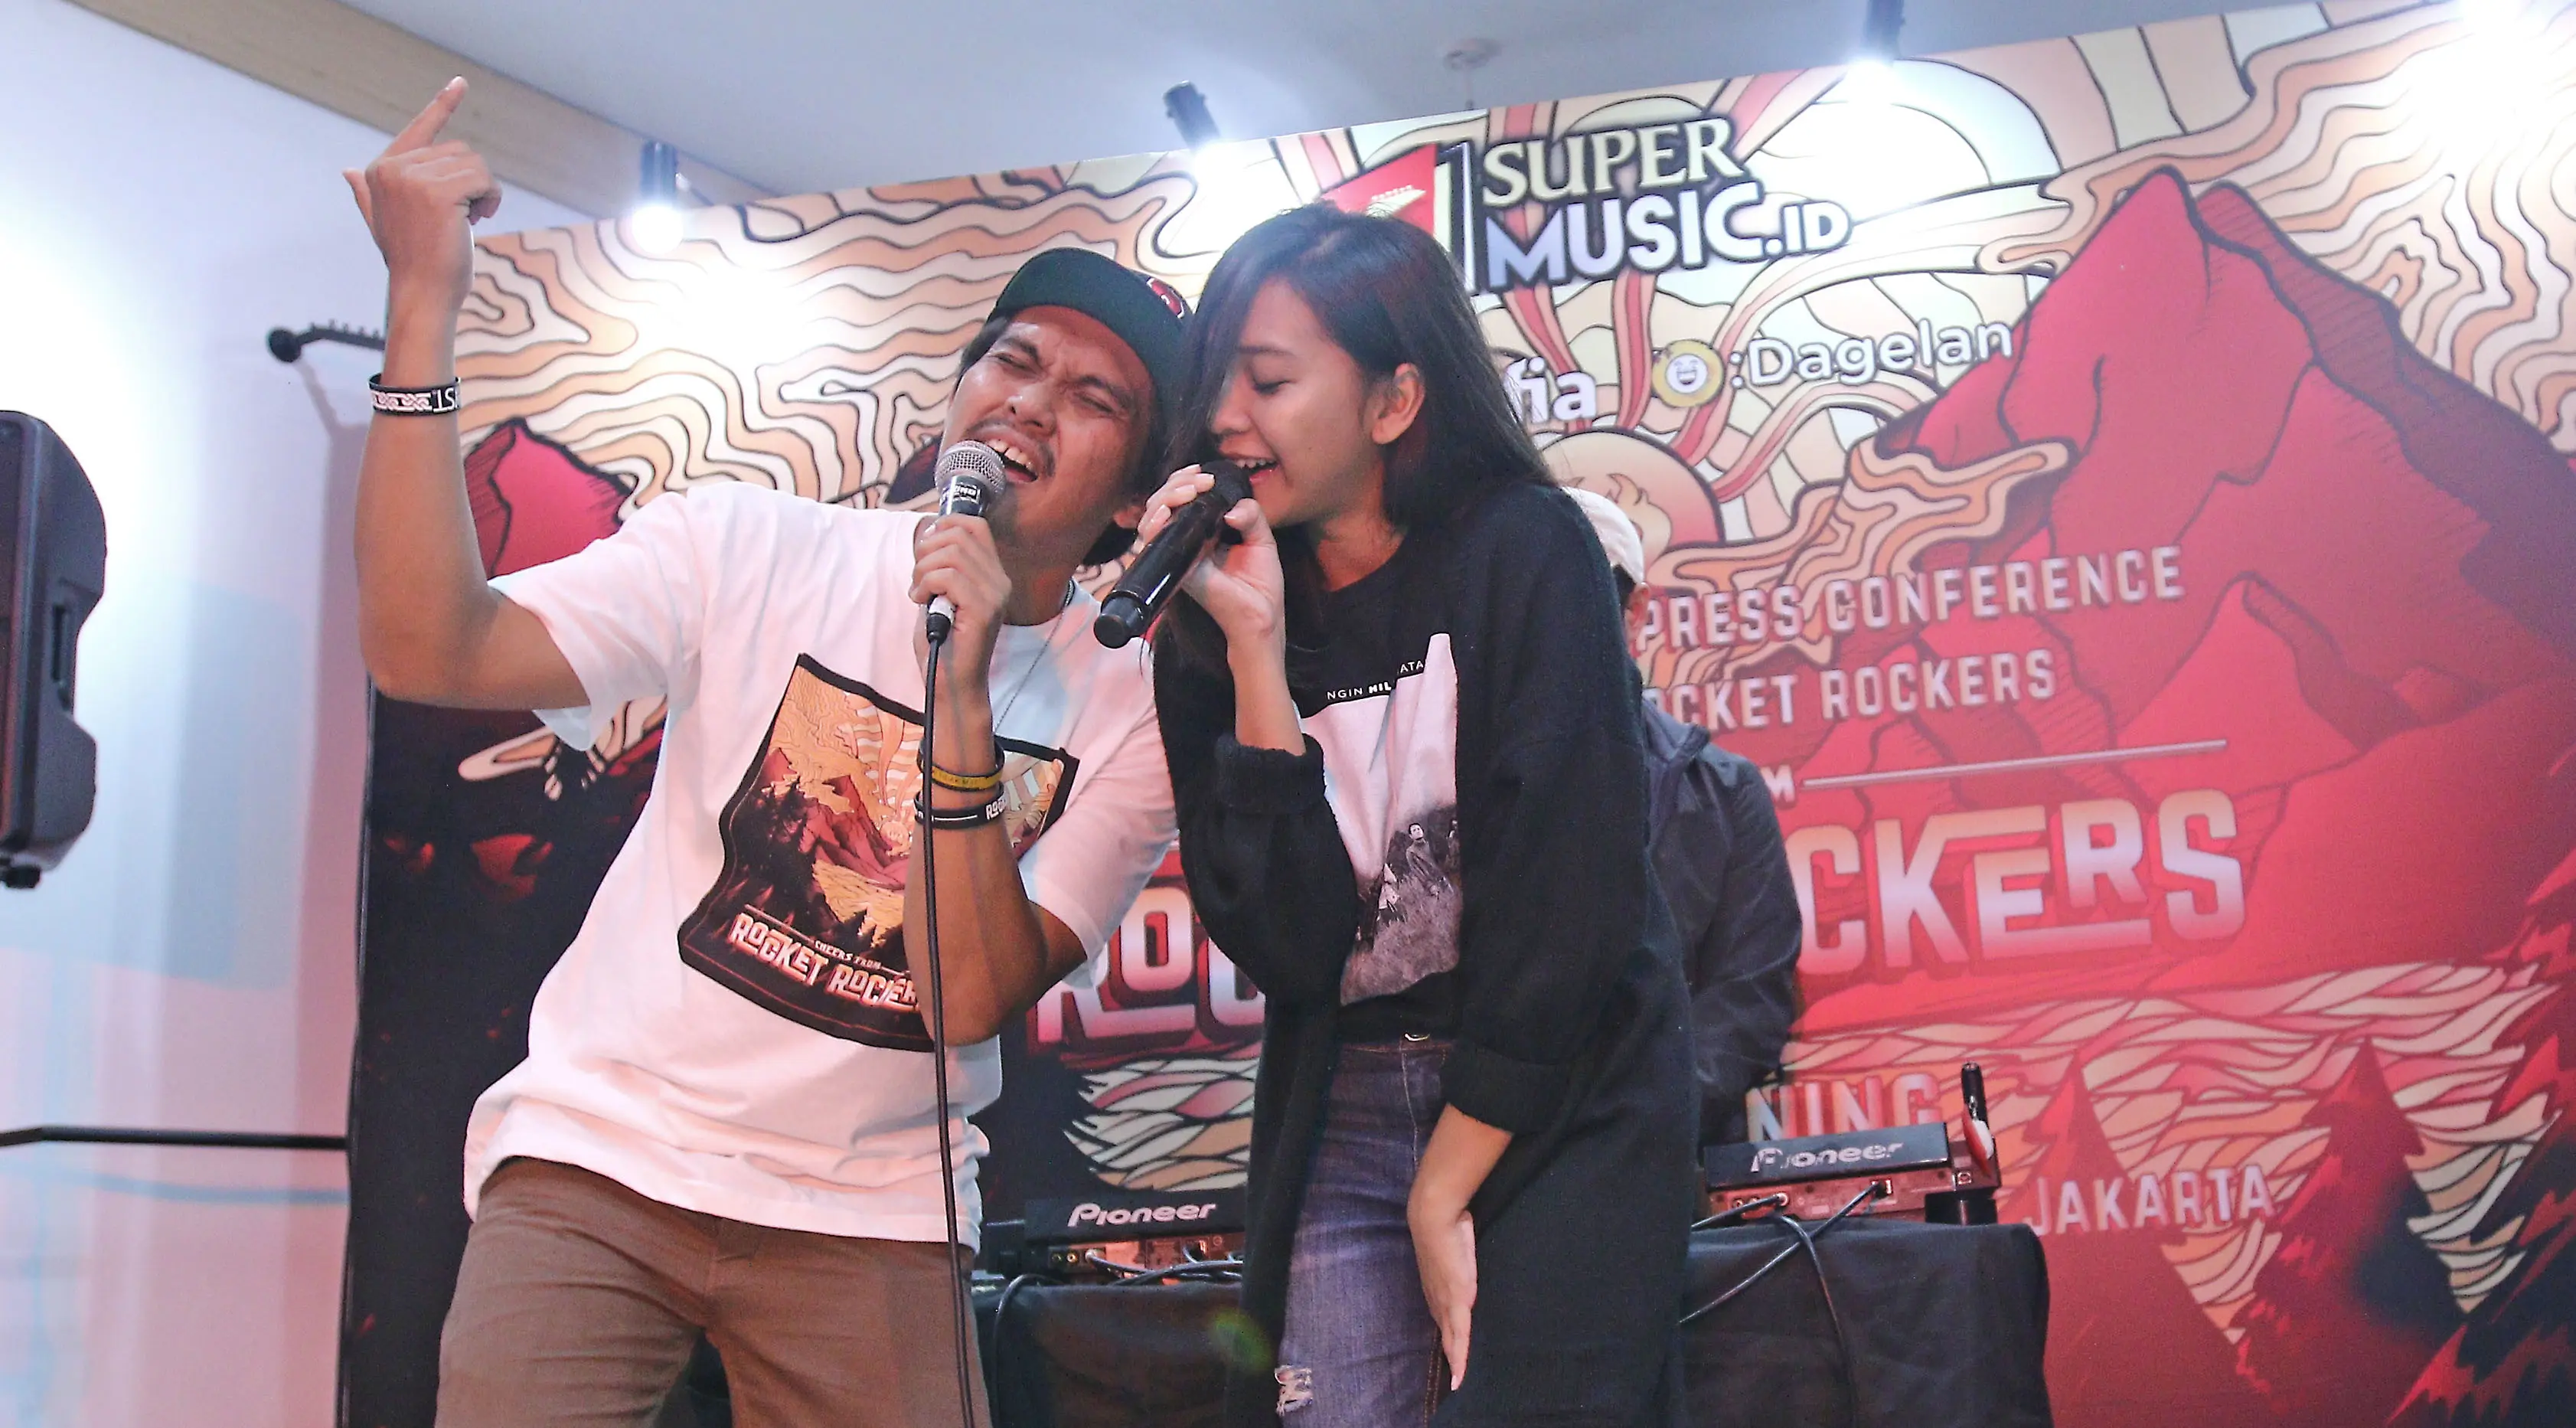 Penampilan Vokalis Rocket Rockers Aska bersama Midnight Quickie seusai  rilis album ke-6 di kawasan Tebet, Jakarta, Rabu (18/10/2017). (Foto: Liputan6.com / Herman Zakharia)